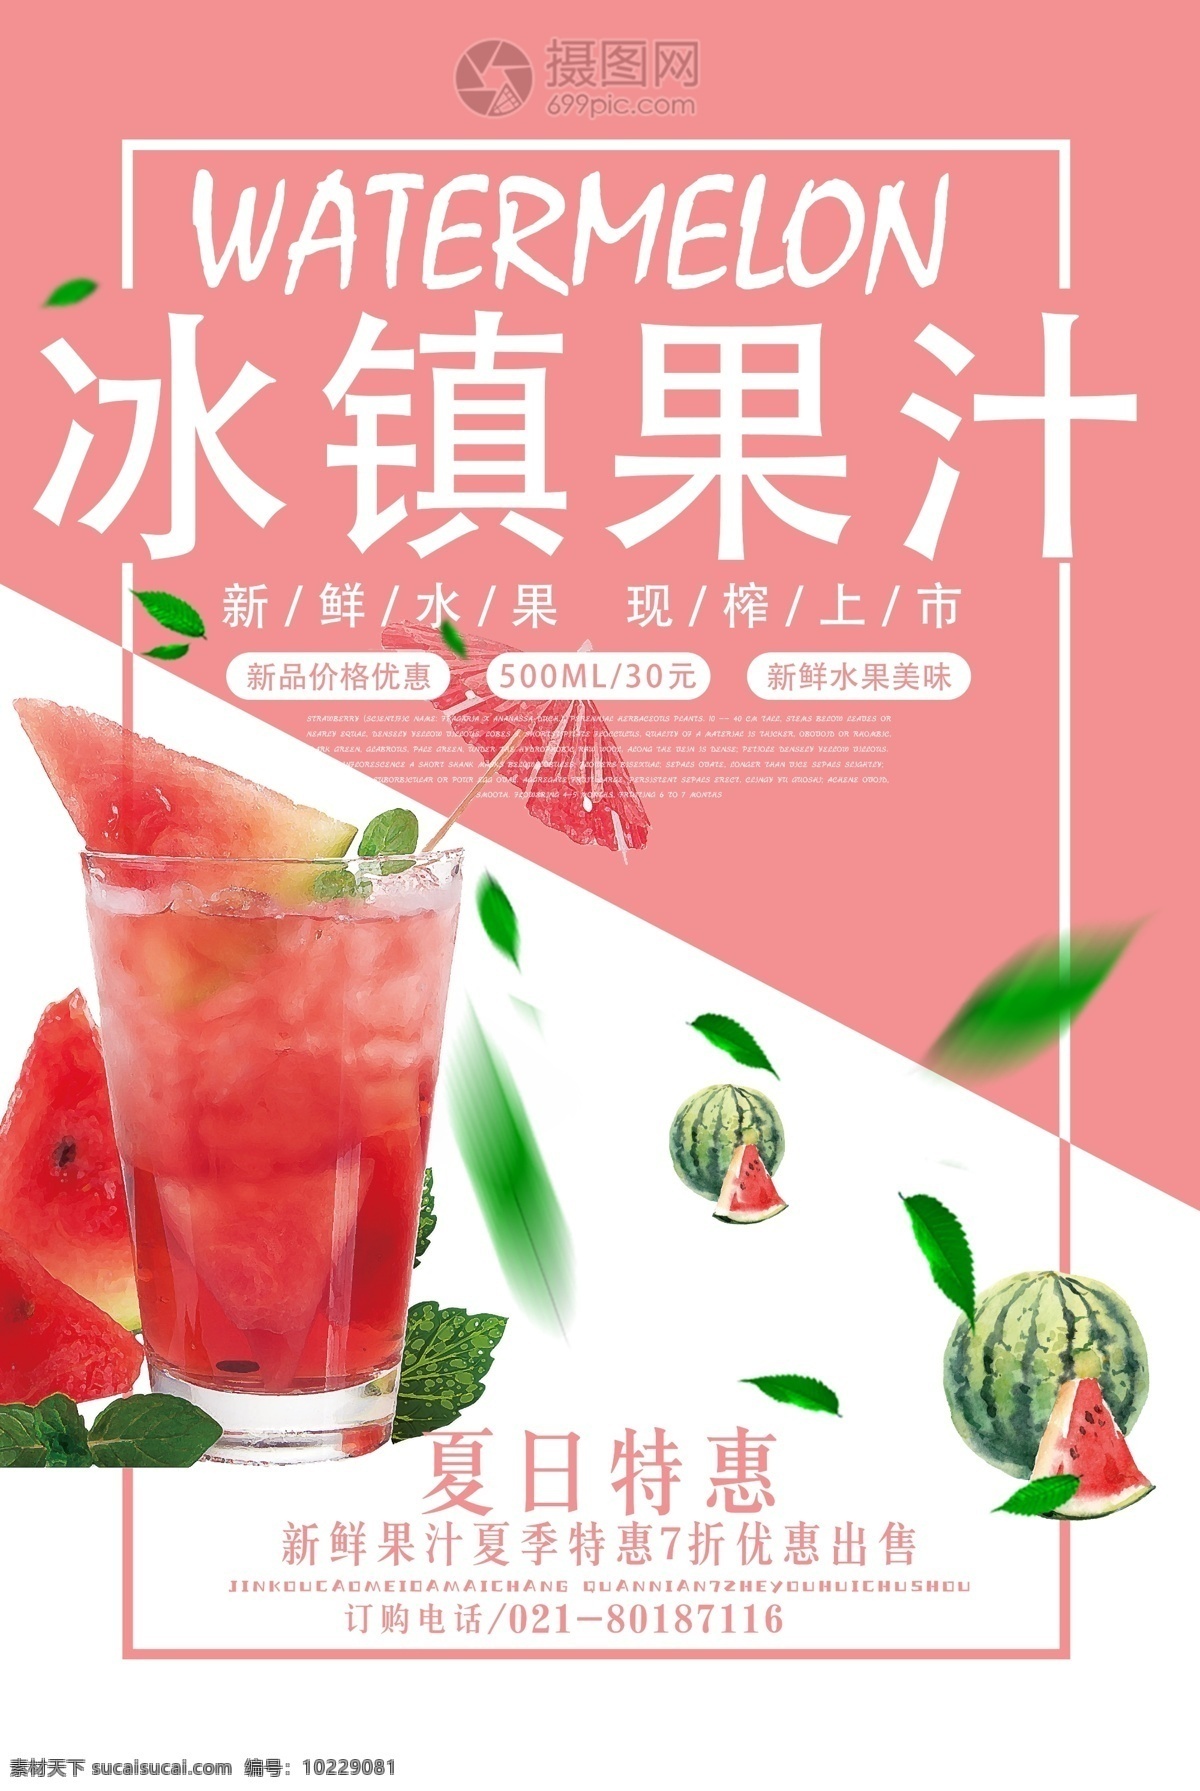 夏日 冰镇 果汁 海报 水果 西瓜 美食餐饮 夏日饮品 西瓜汁促销